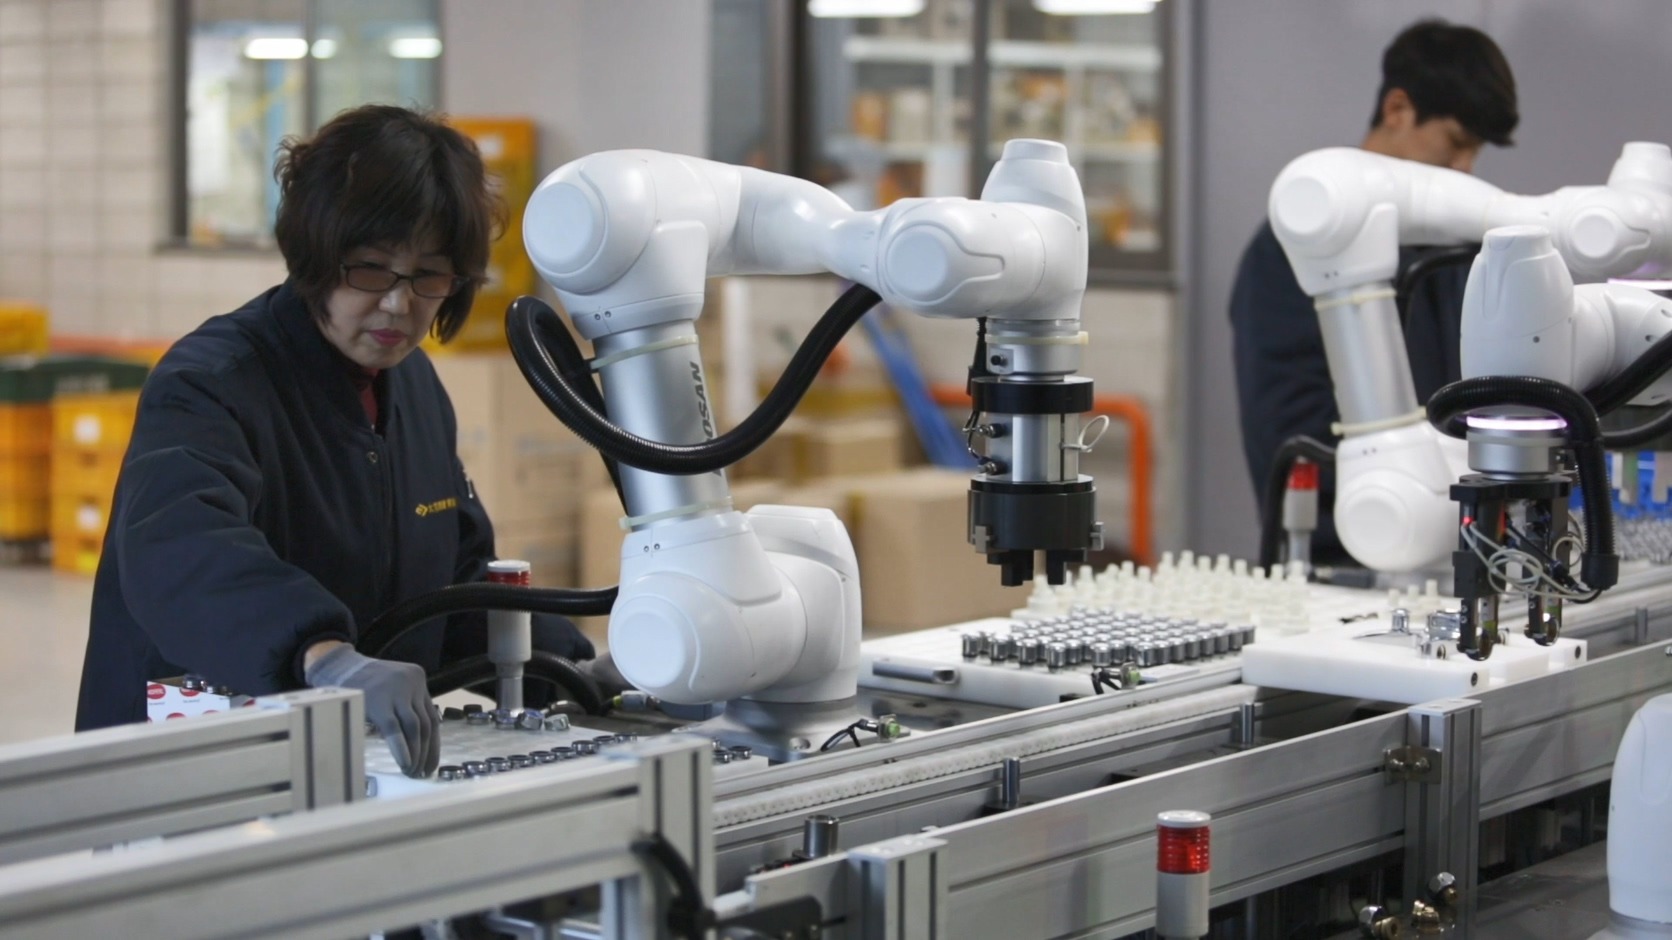 indsats Bliv sammenfiltret vedhæng Industries : faites le choix de la robotique collaborative